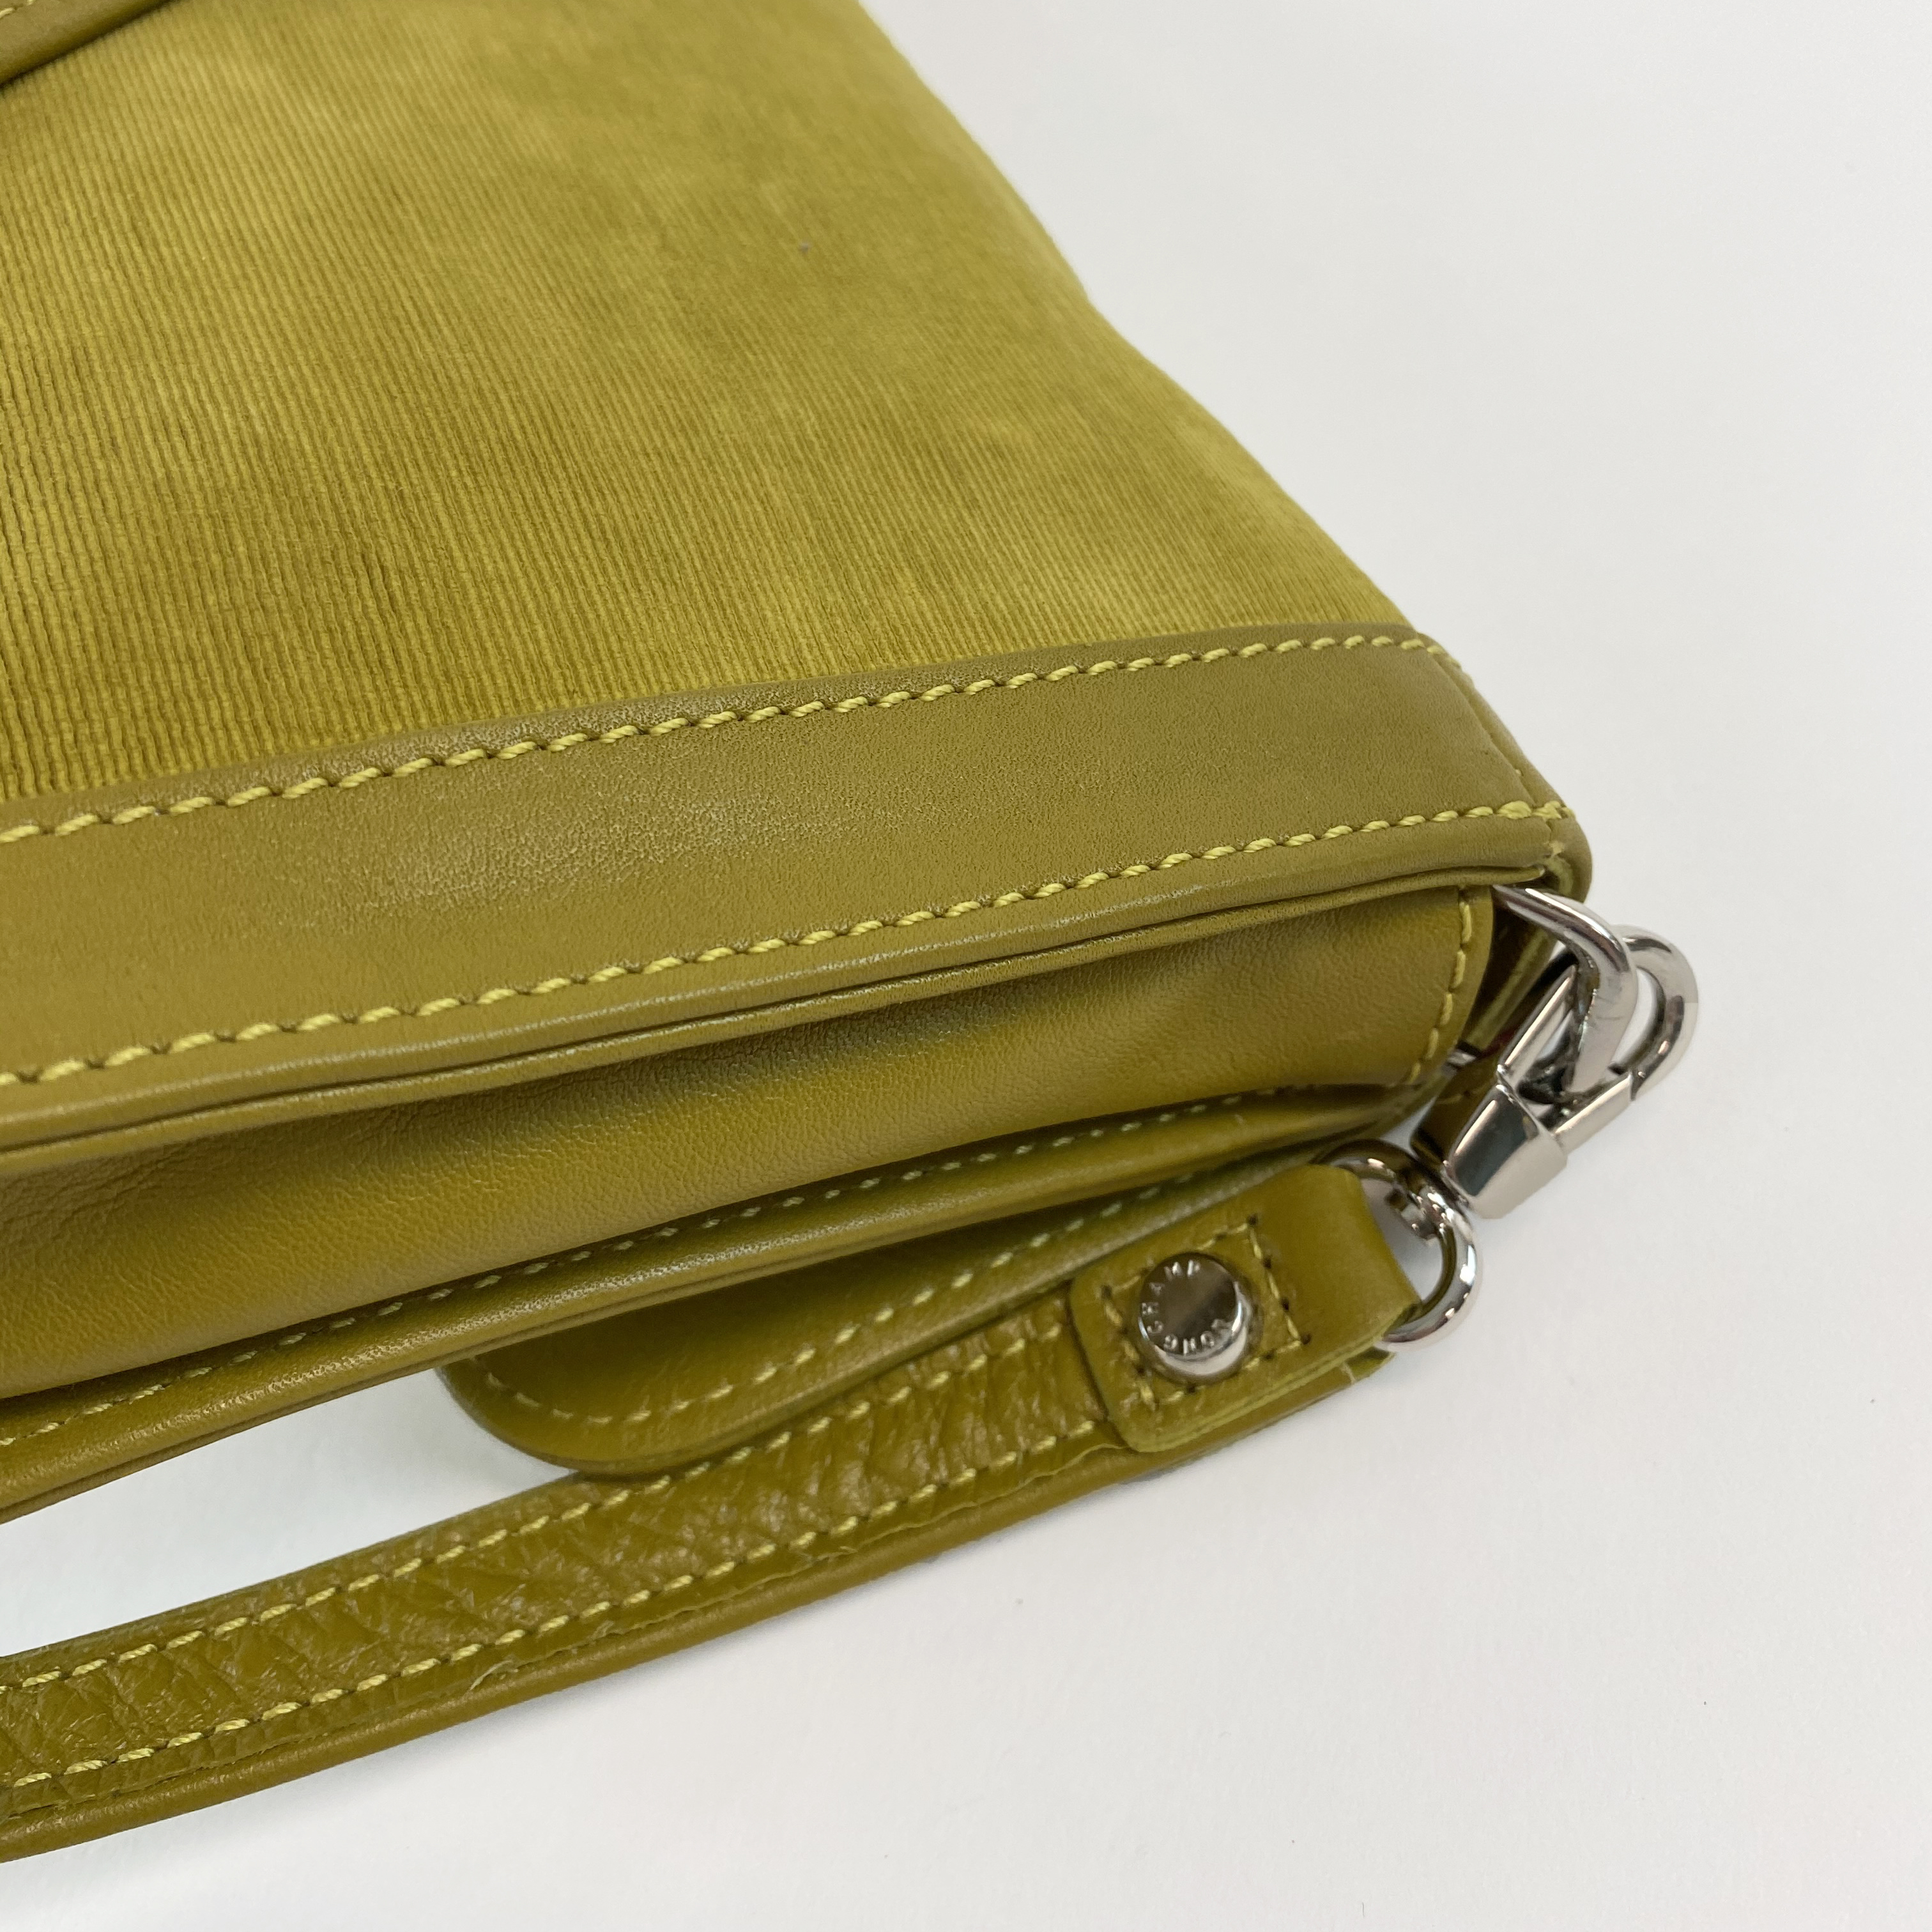 Longchamp Moss Green Velvet and Leather Handbag